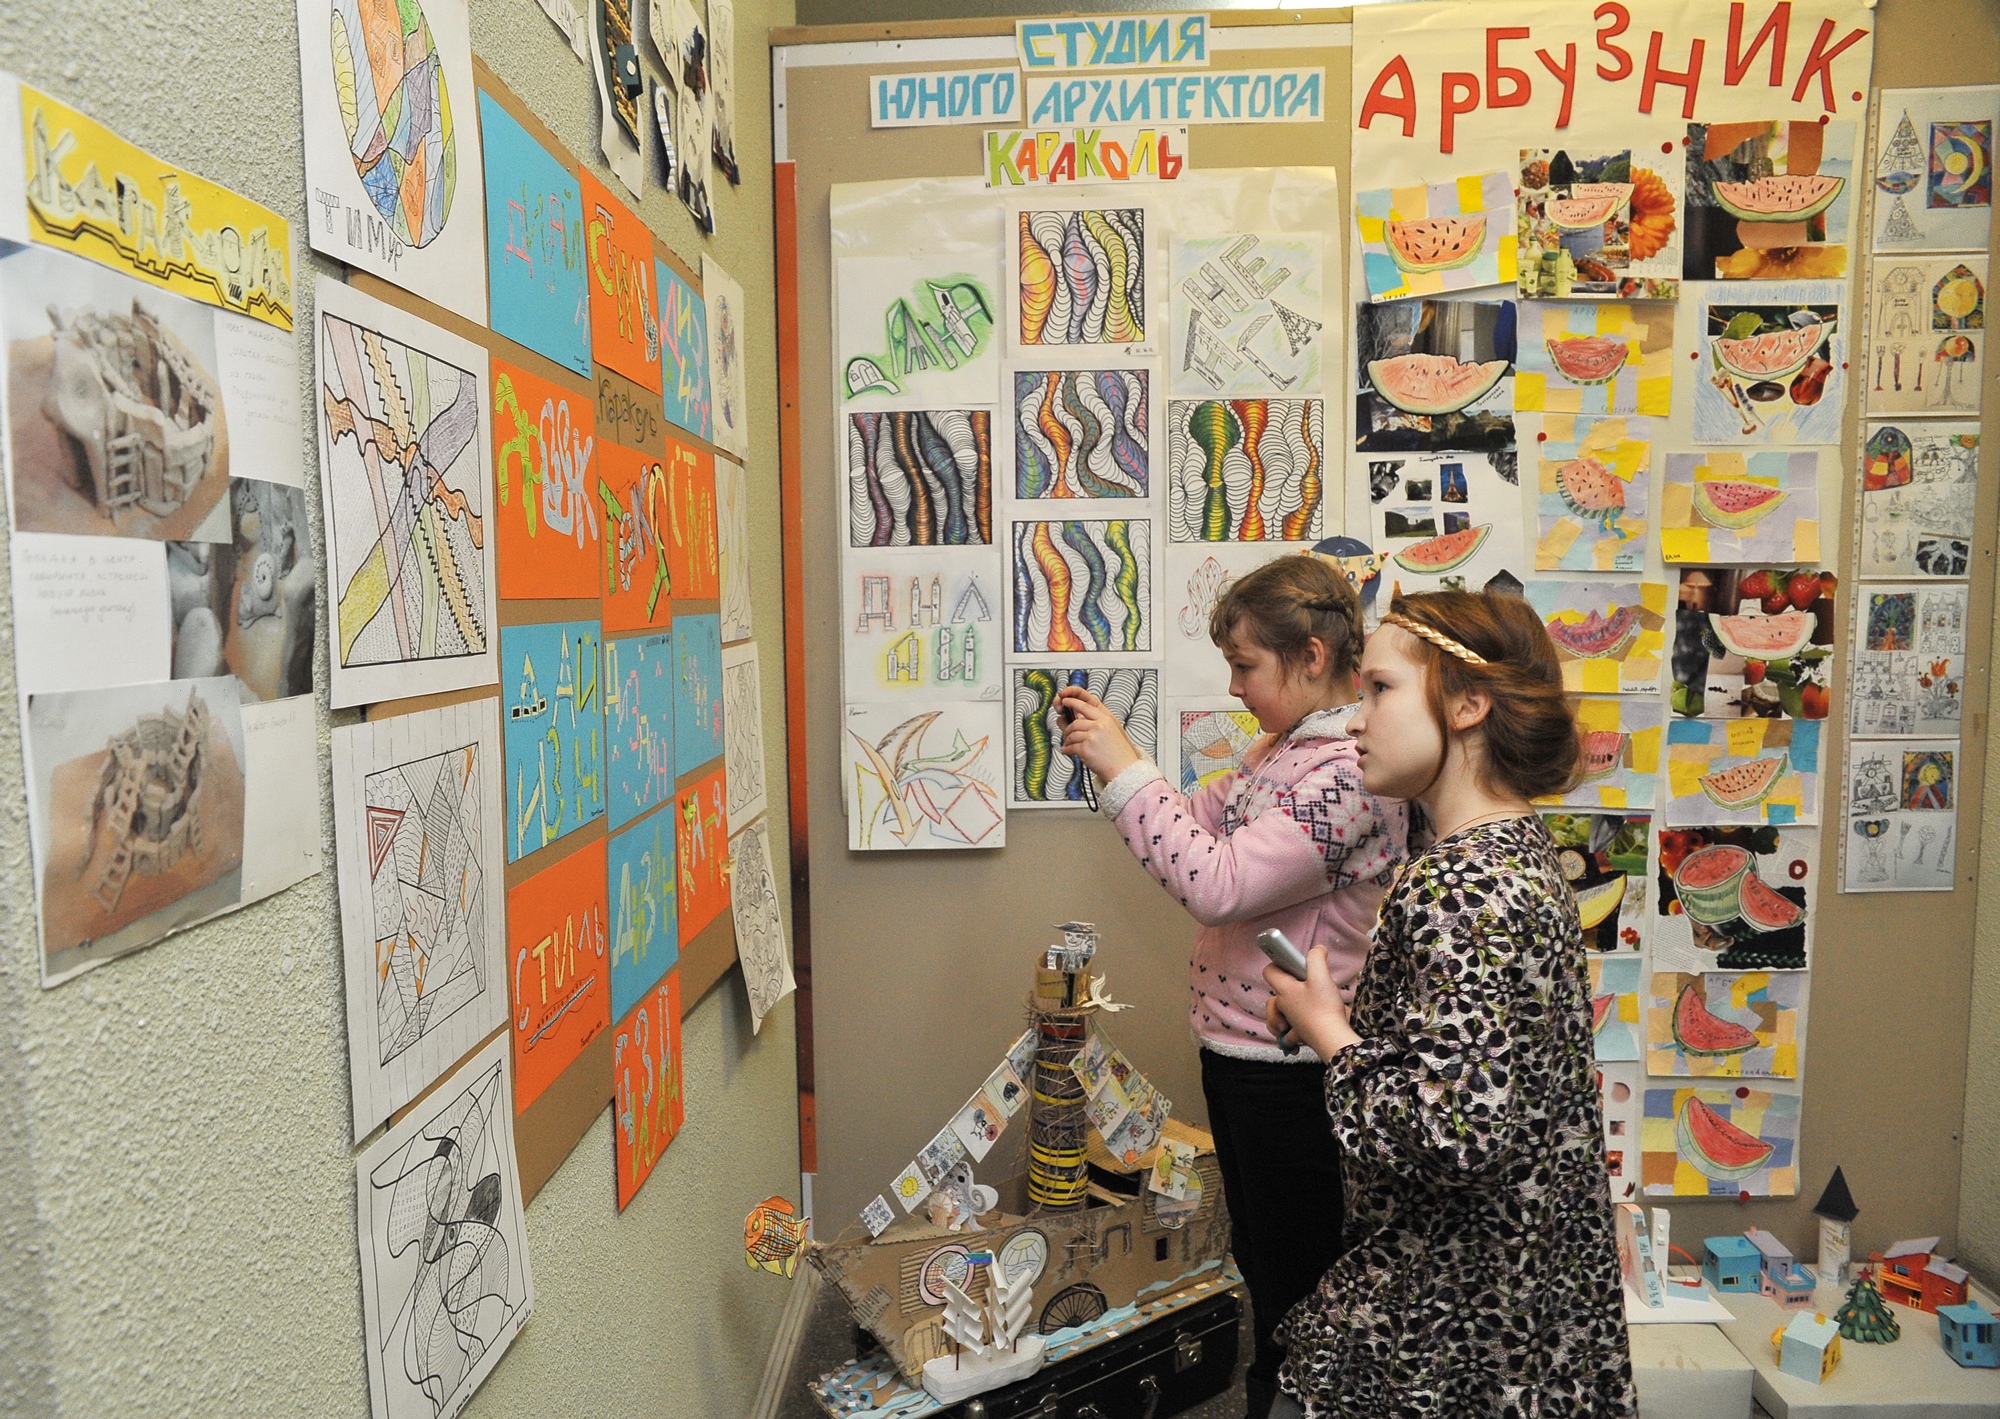 Выставка работ учеников студии «Караколь» в Доме архитектора. Апрель 2014 года